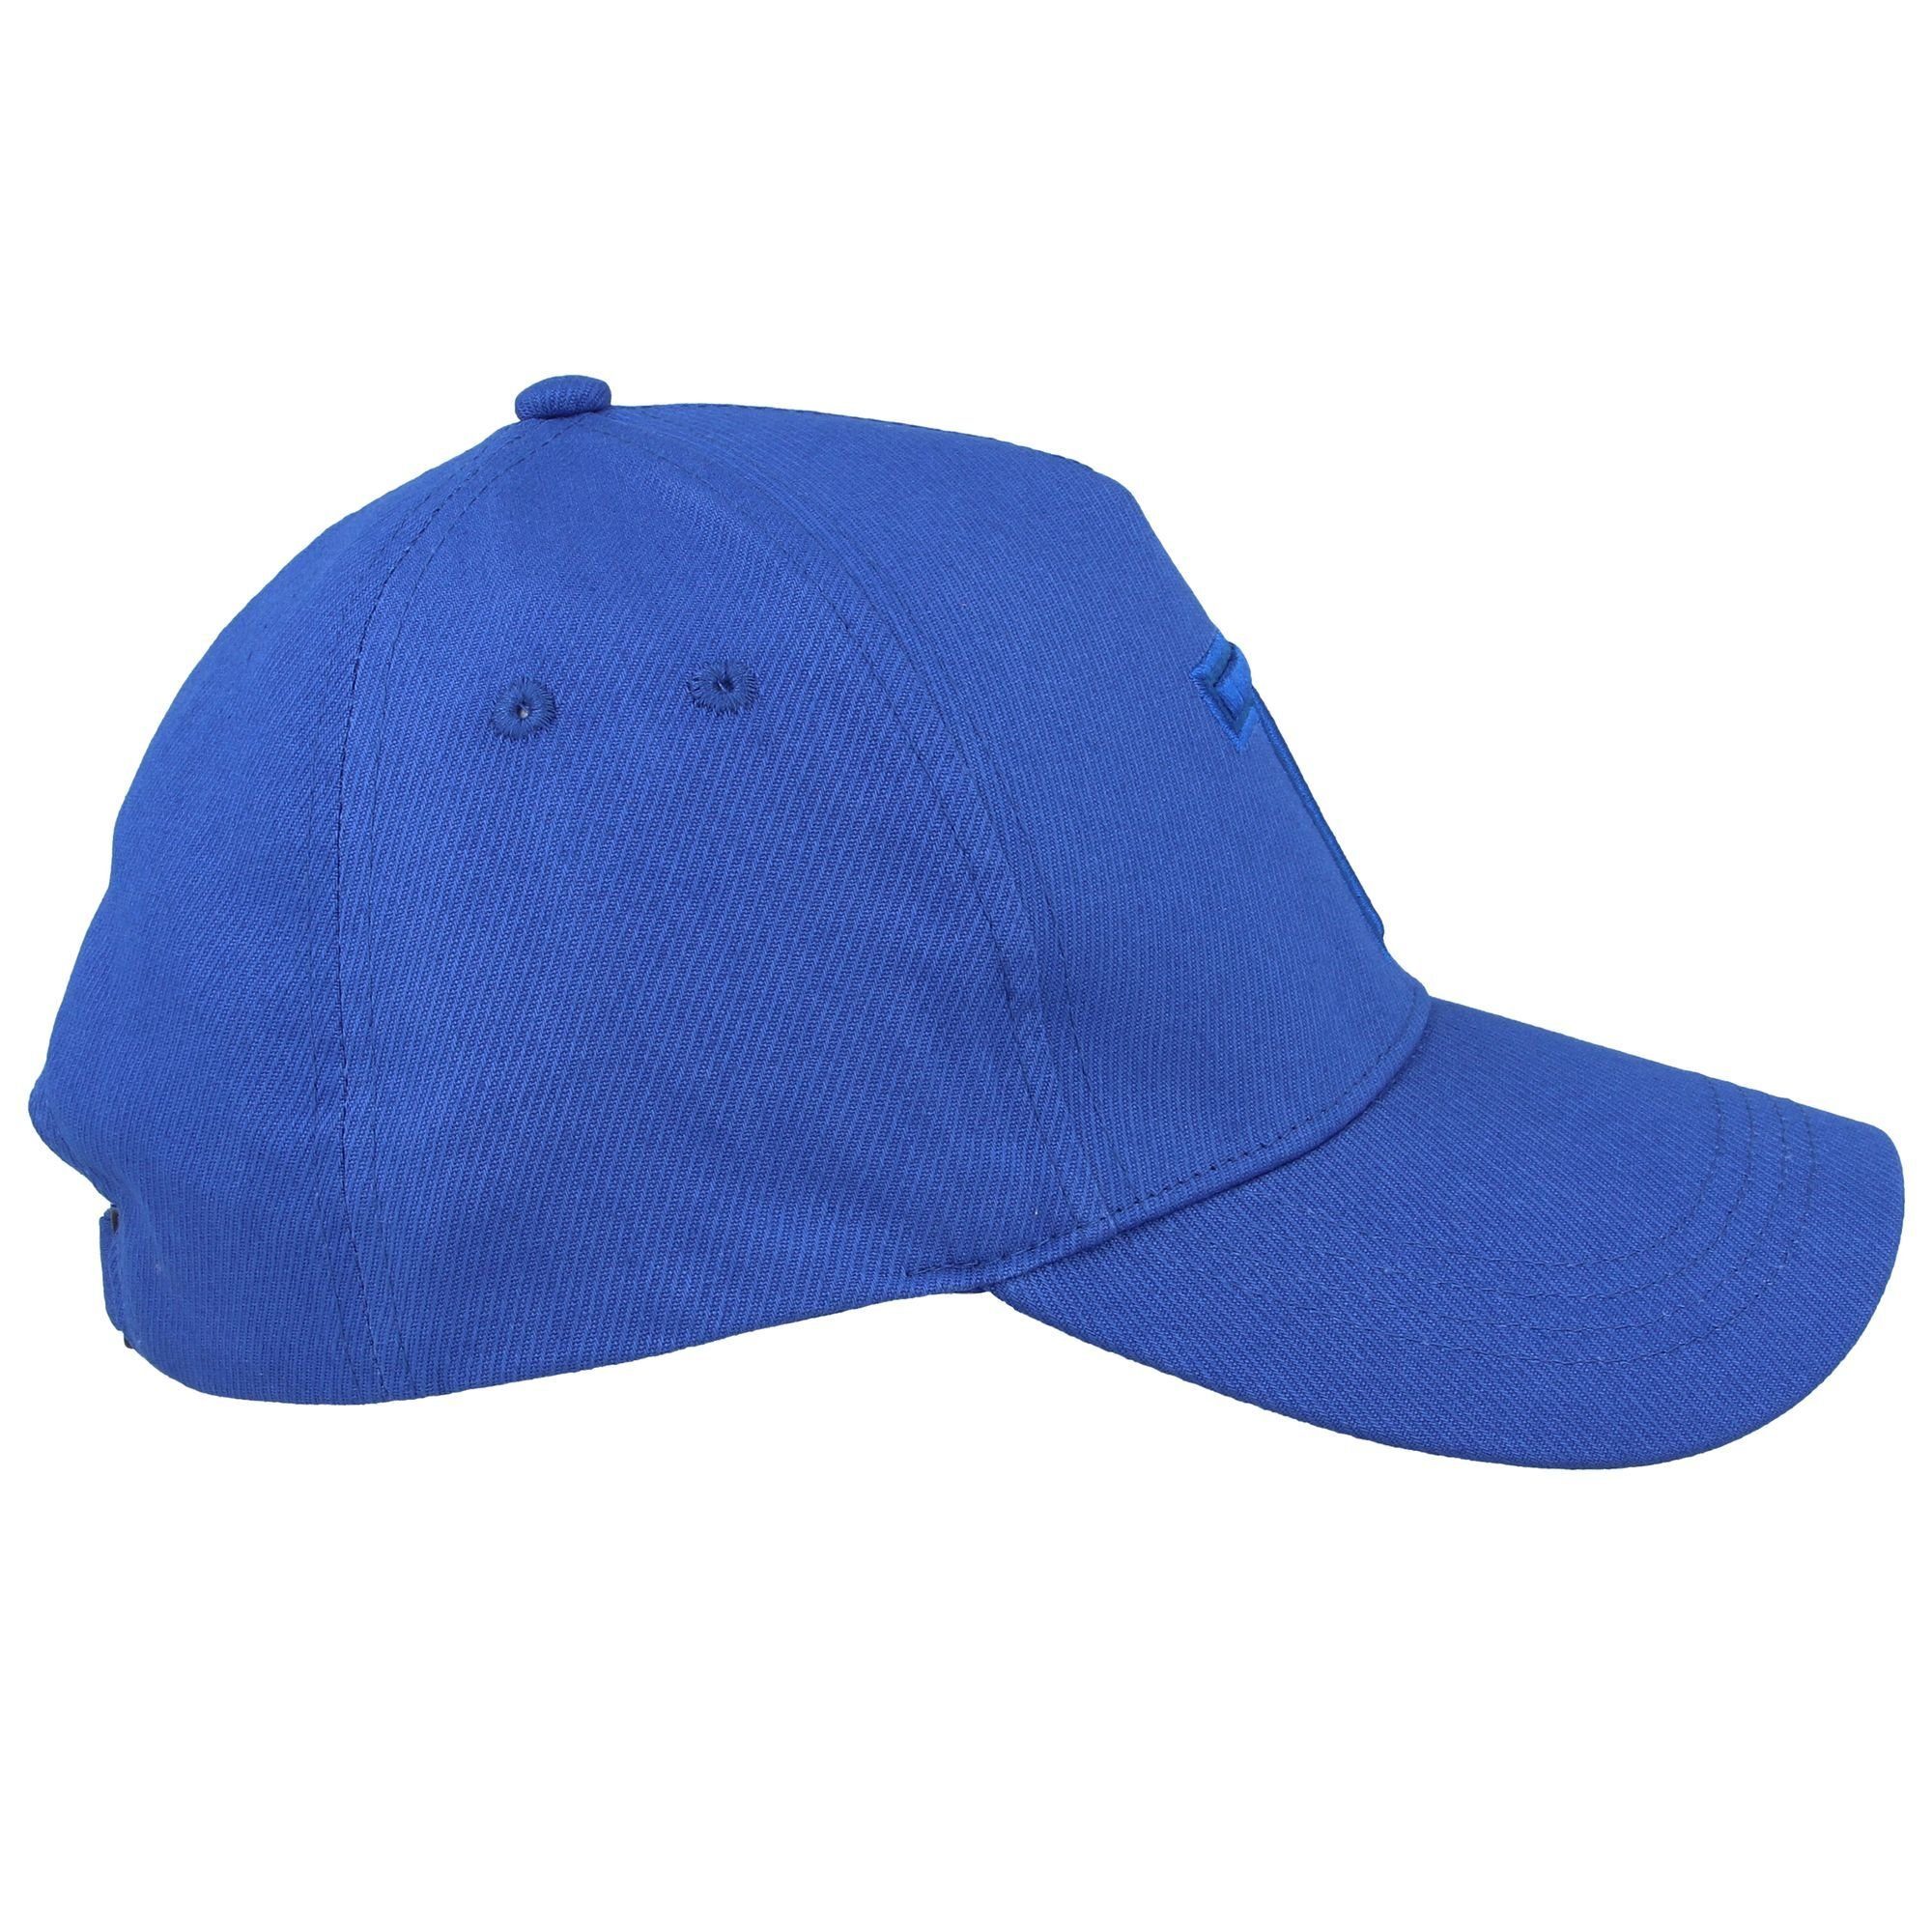 Baker Ted brt-blue Tristen Cap Baseball